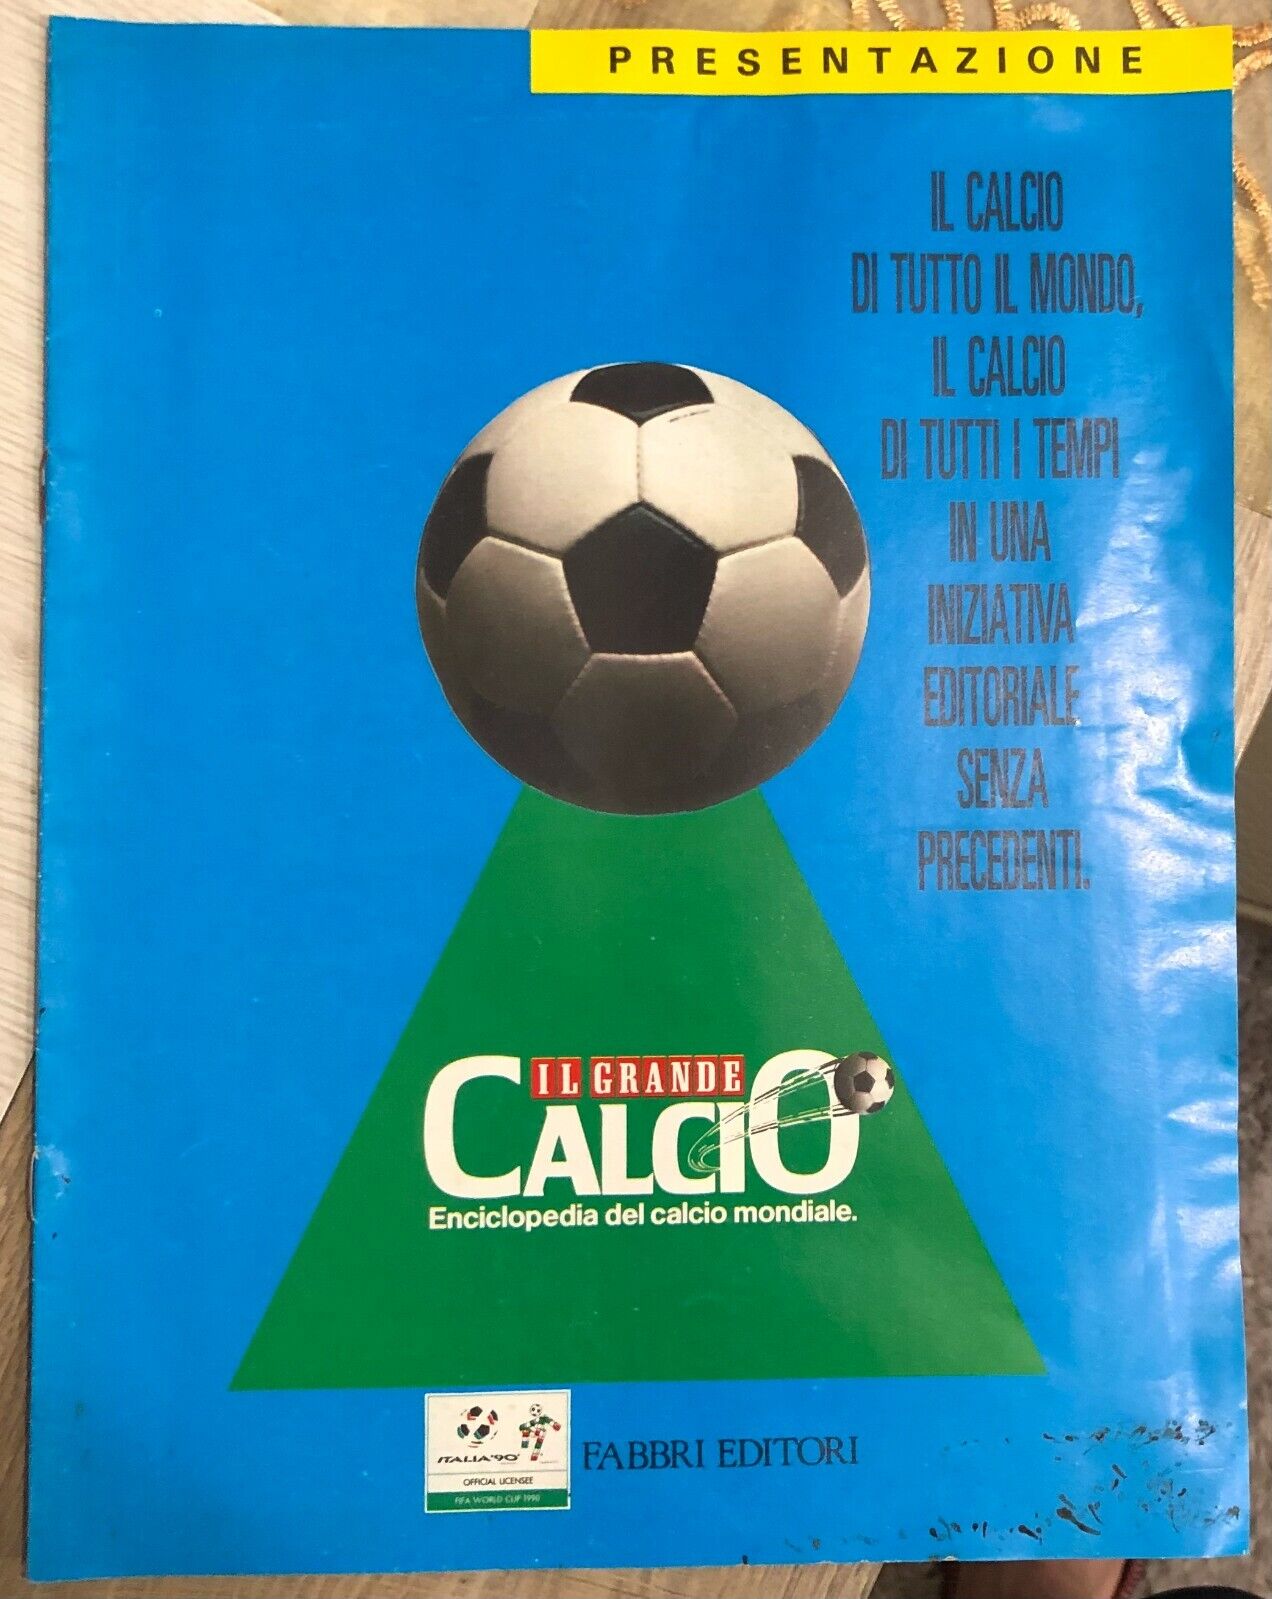 Il grande calcio. Enciclopedia del calcio mondiale PRESENTAZIONE di Aa.vv.,  199